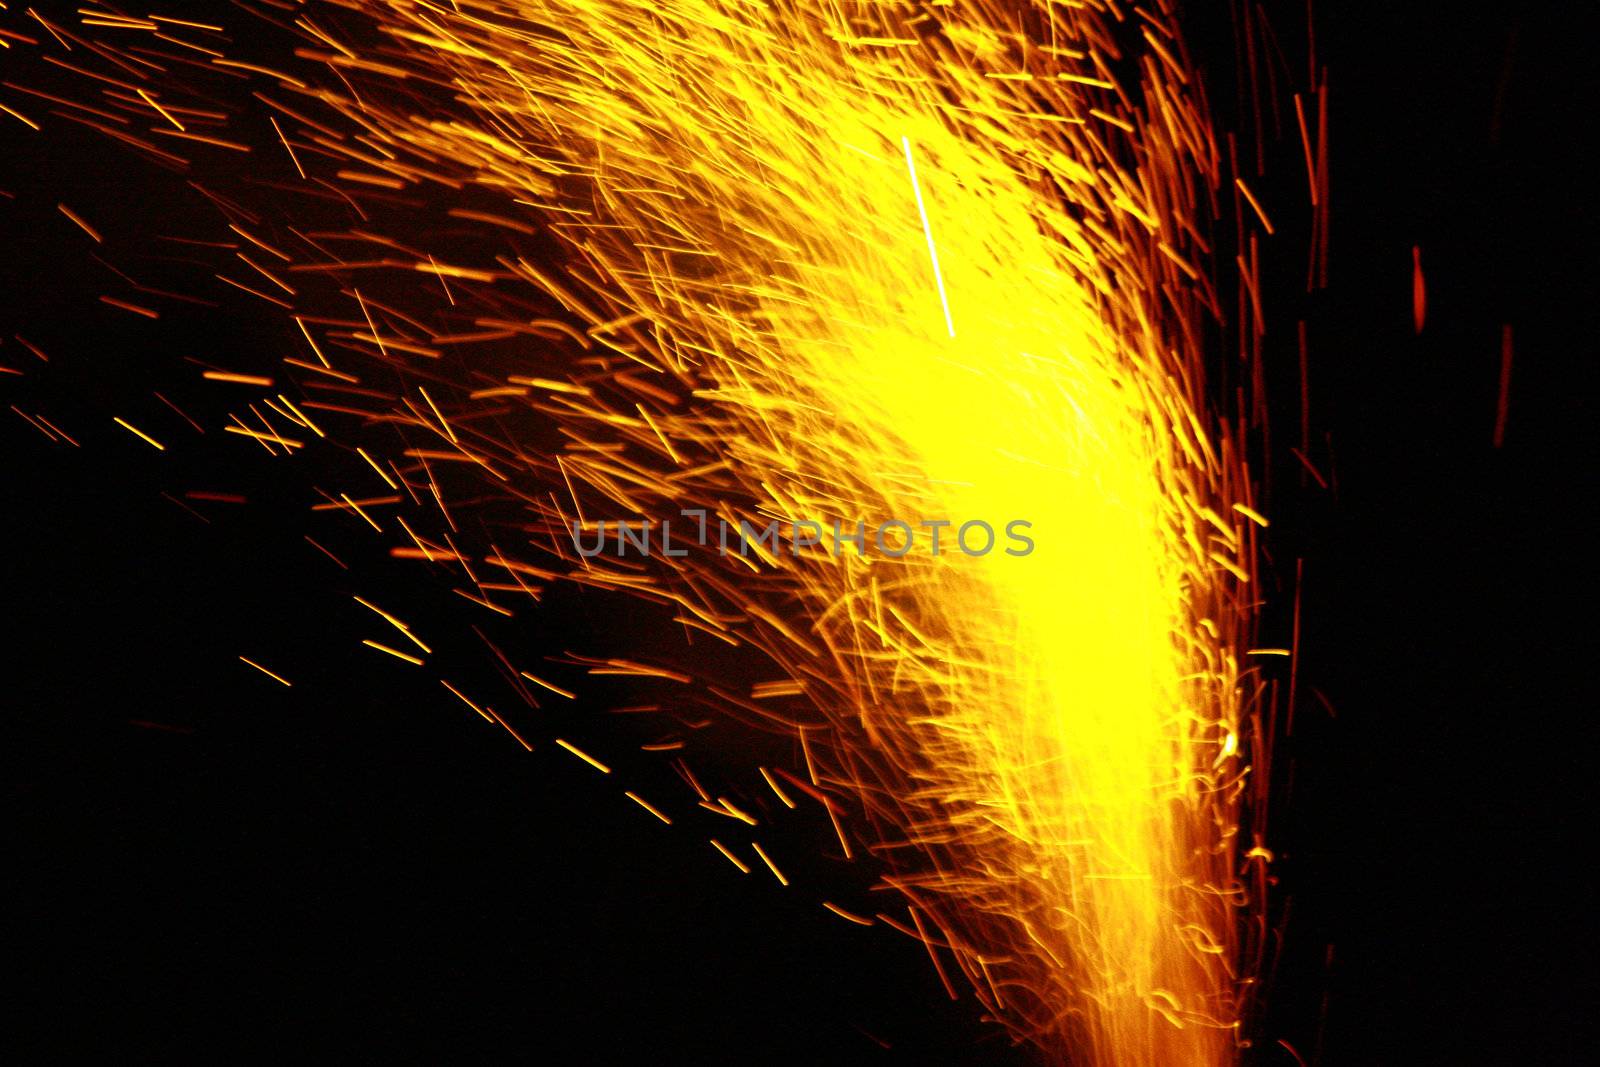 firework by nimatypografik